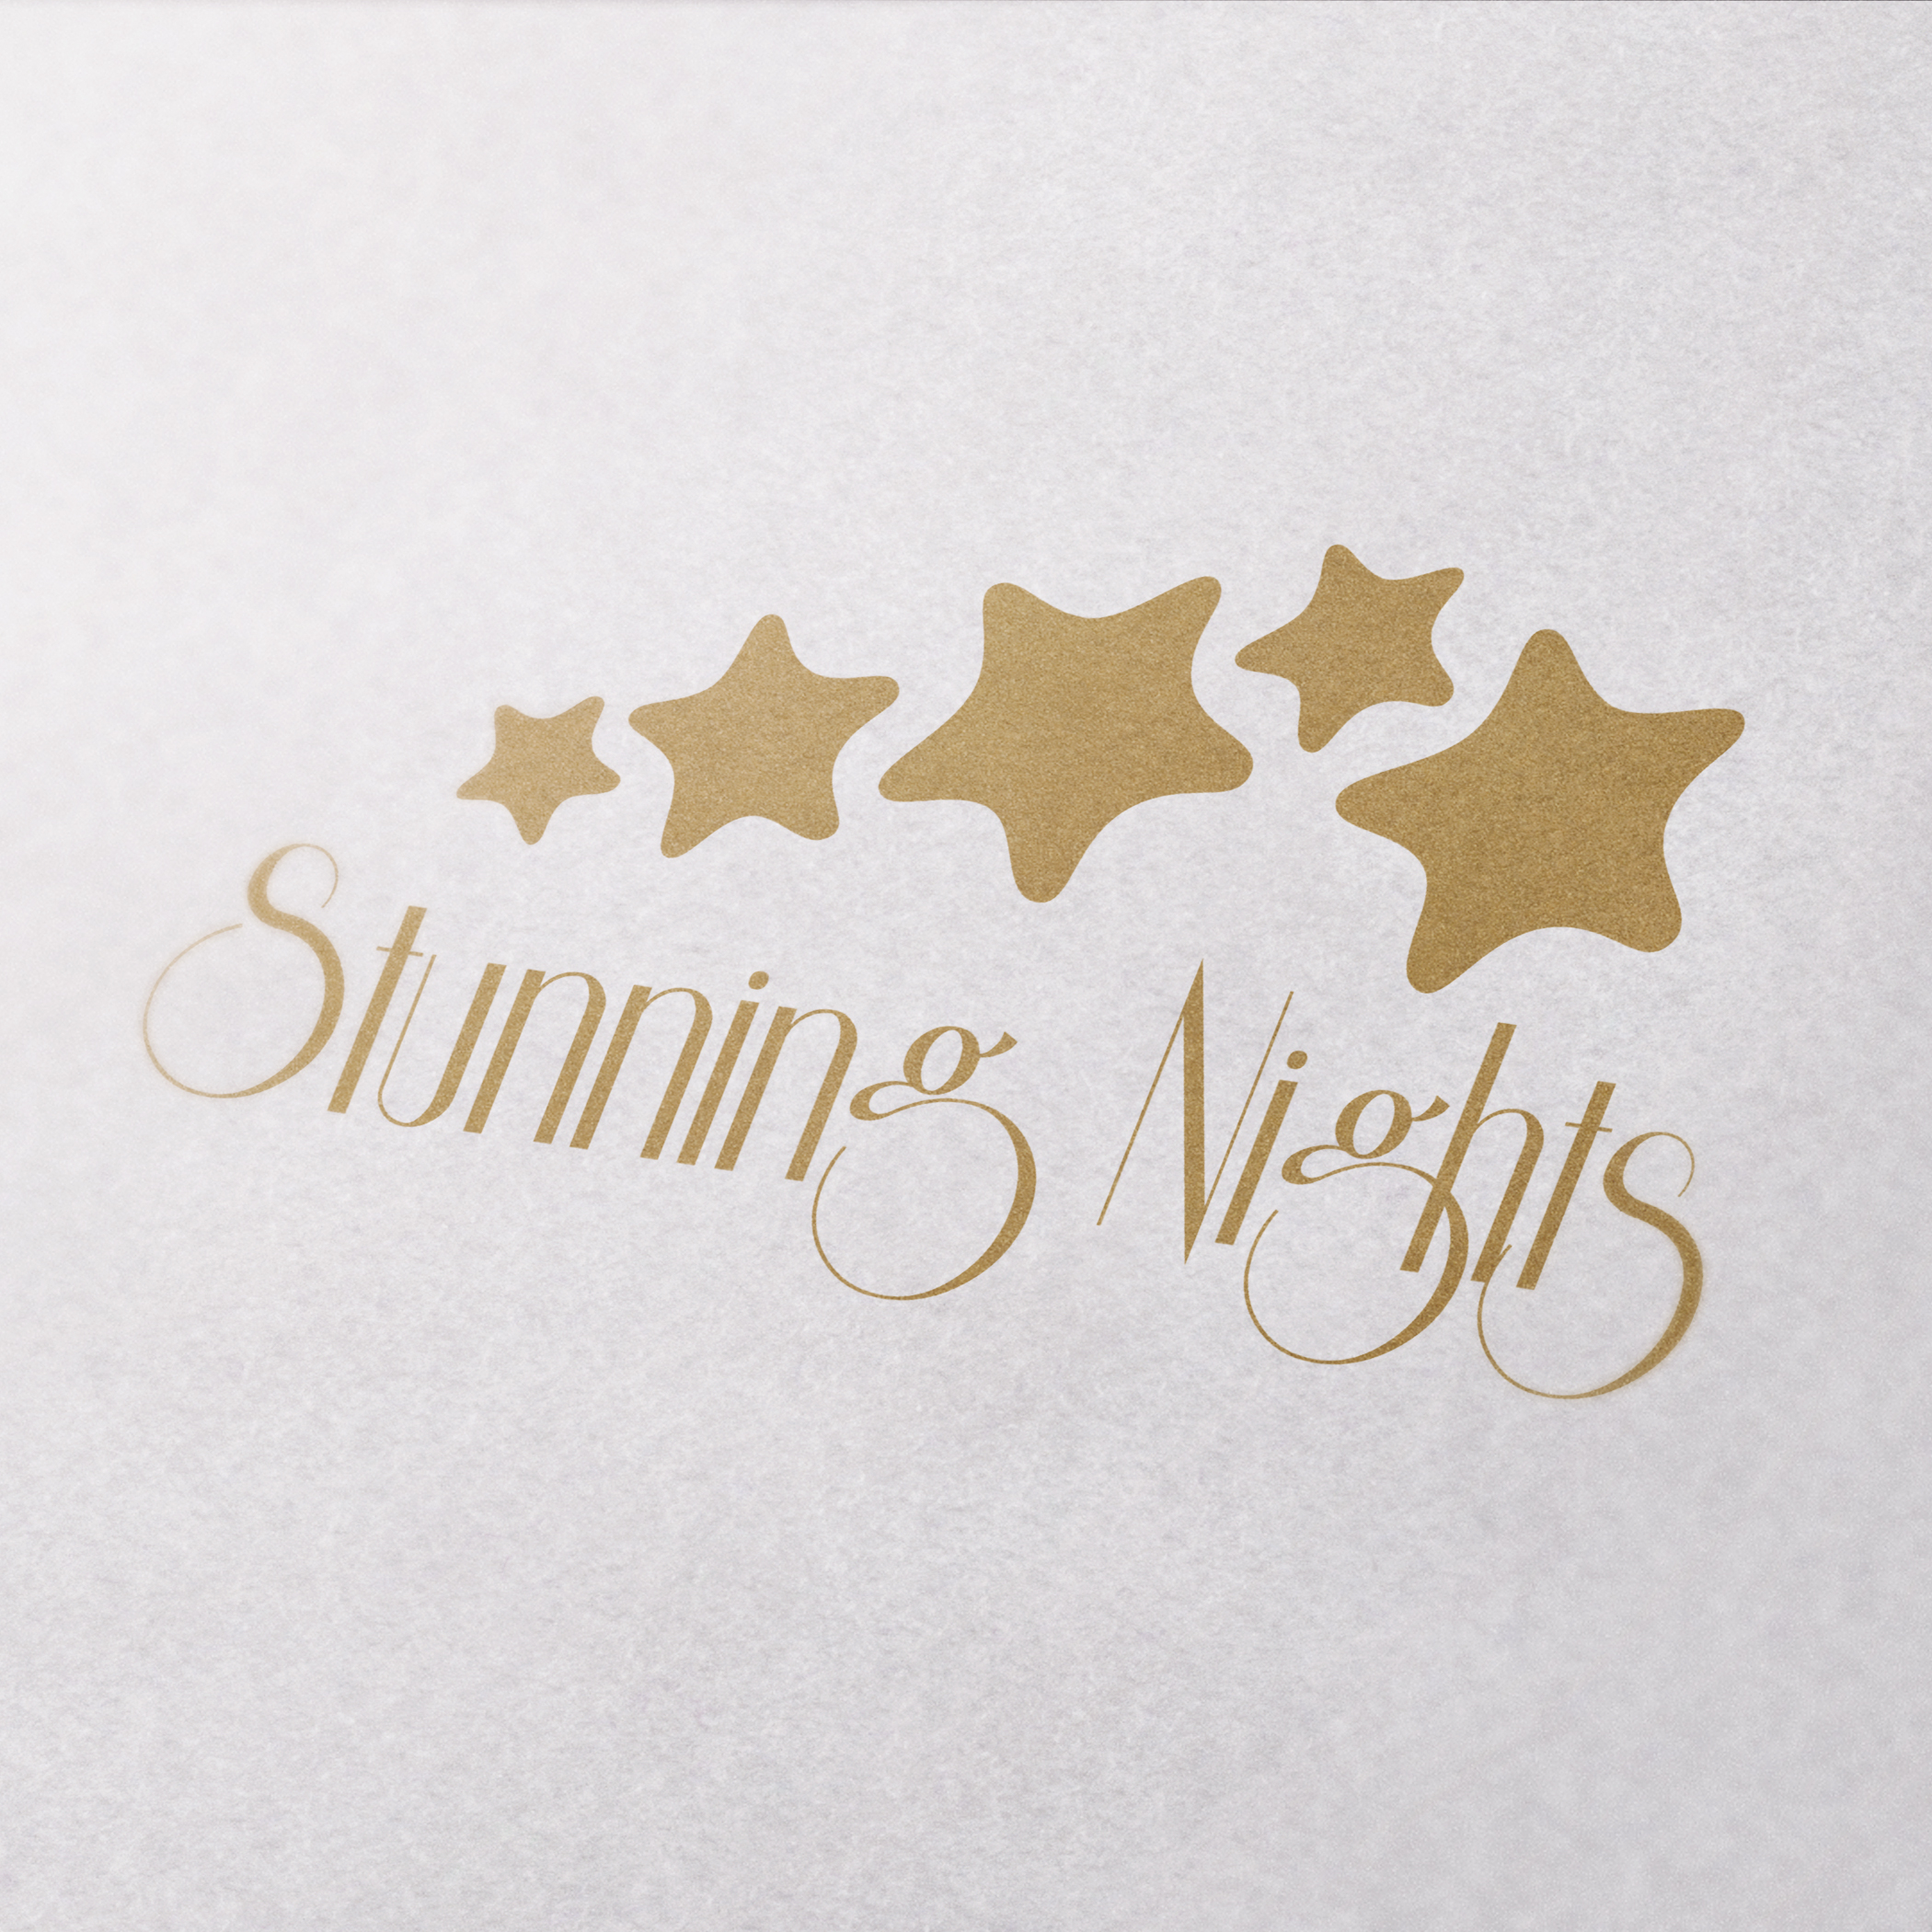 Logo-Entwicklung: Stunning Nights